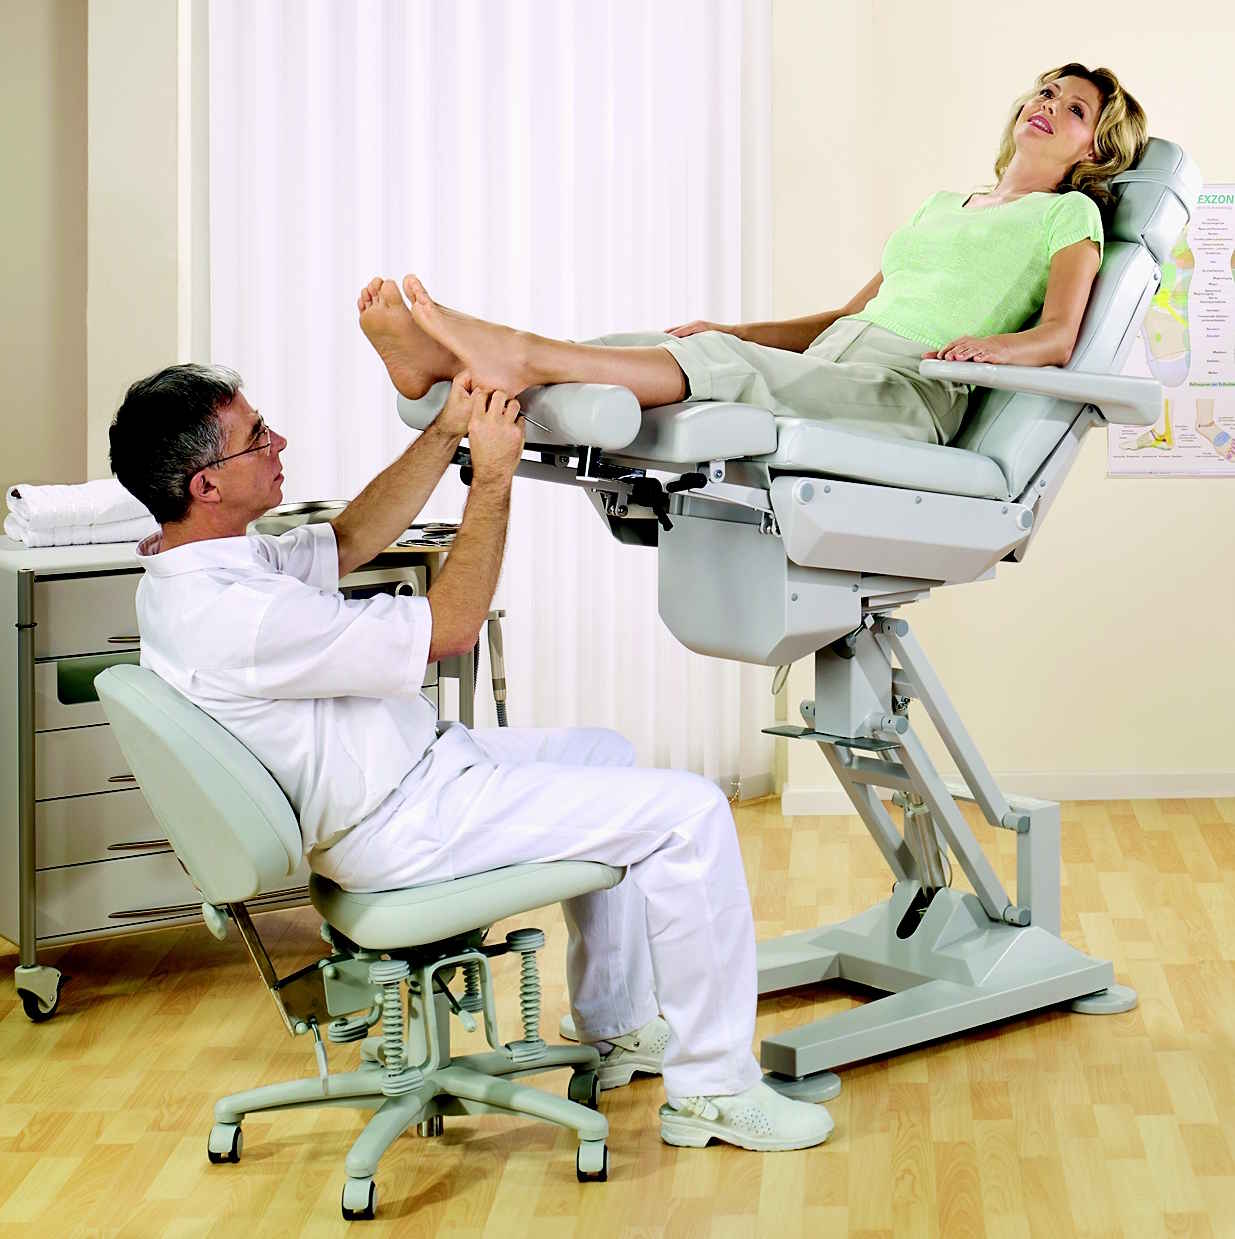 Мужчина приходит к гинекологу. 151540 Кресло гинекологическое. Гинекологическое кресло Зерц. Кресло проктолога. Осмотр гинеколога на кресле.